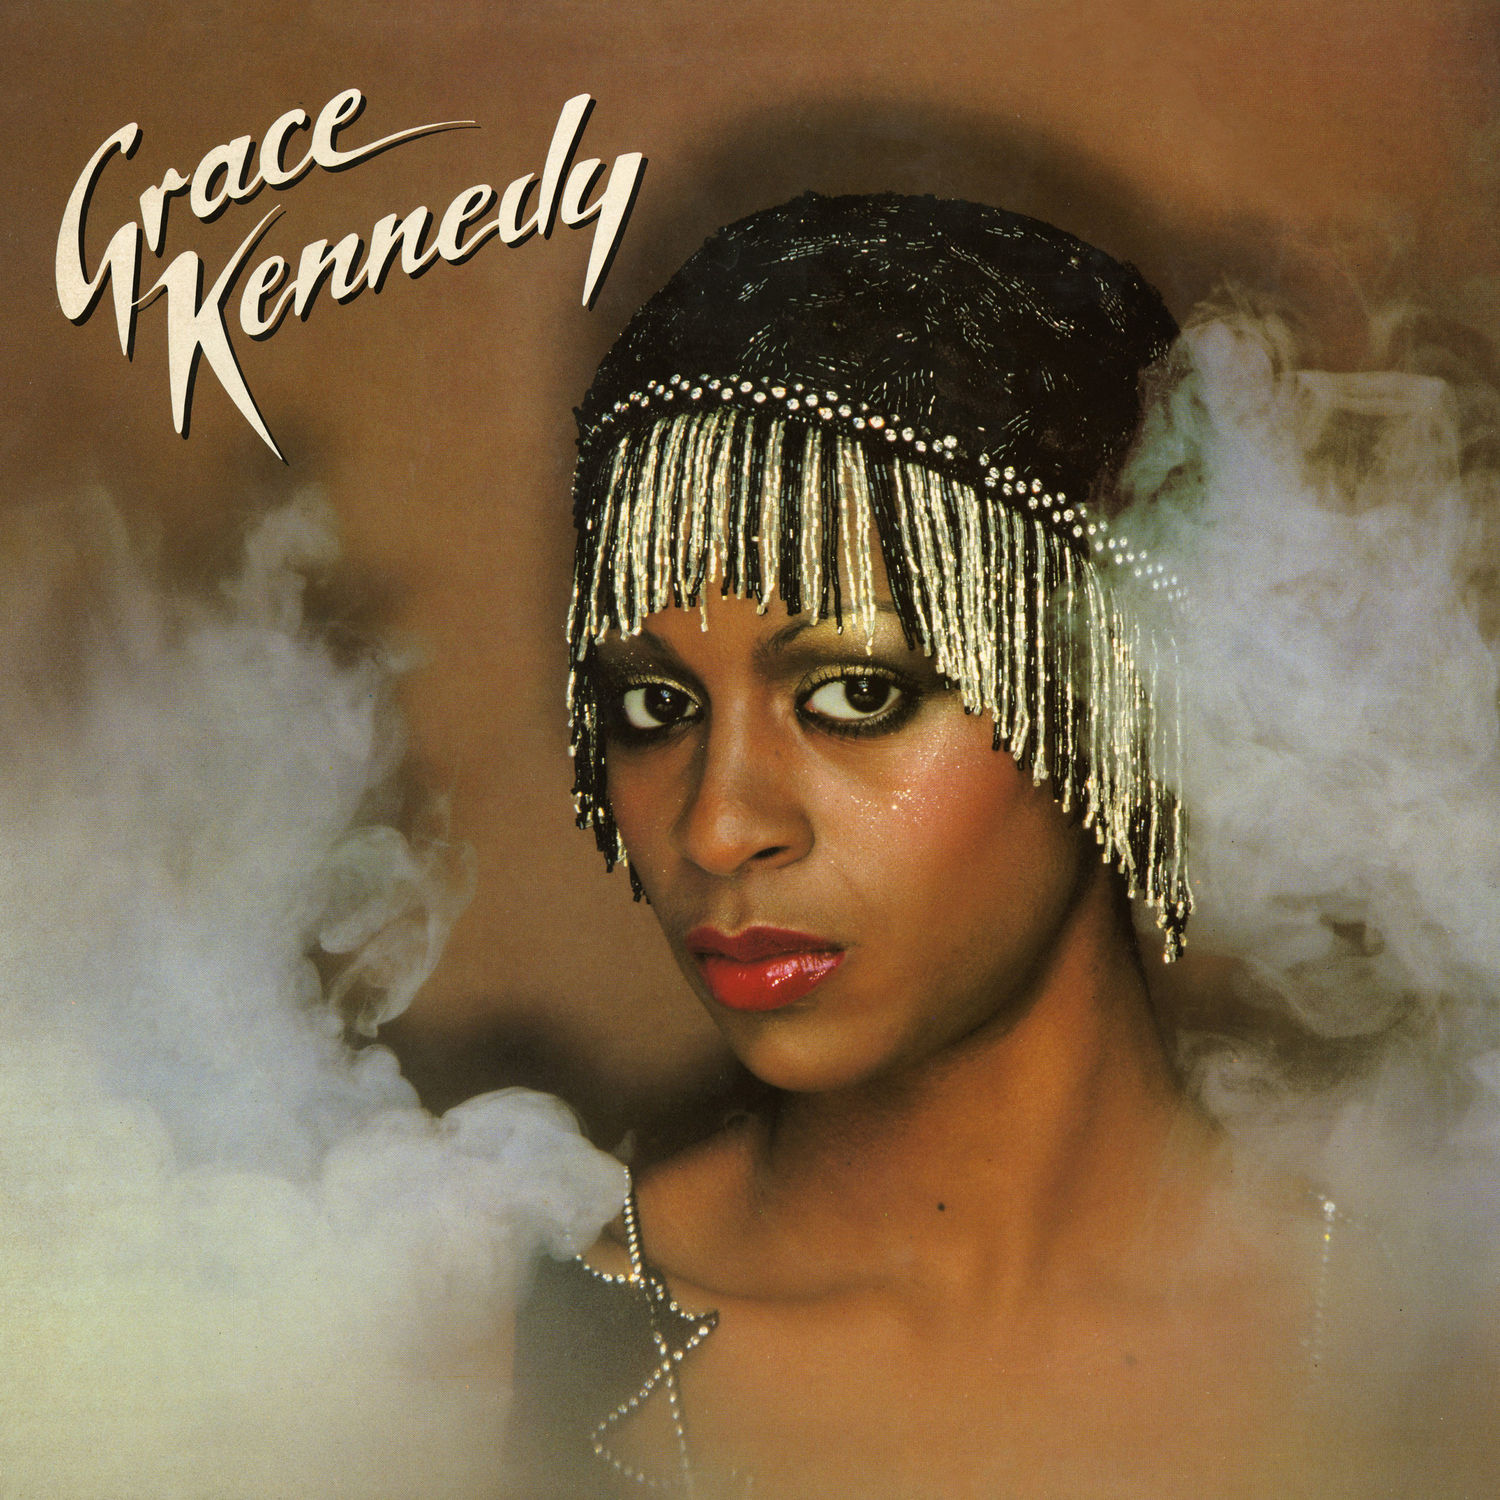 Grace Kennedy - Grace Kennedy (1979/2021) [FLAC 24bit/96kHz]